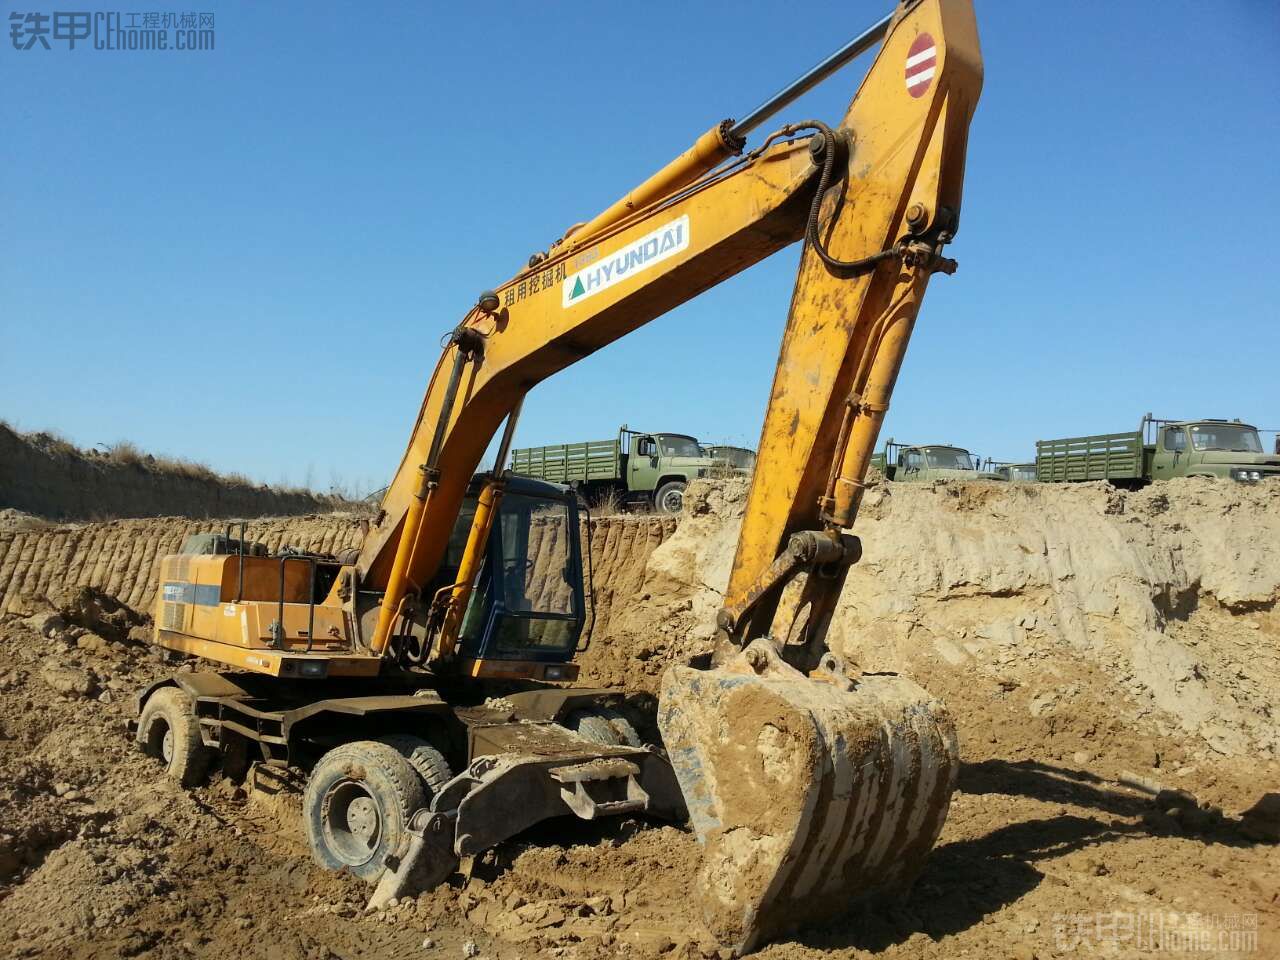 现代 轮挖R210W 二手挖掘机价格 17万 1小时